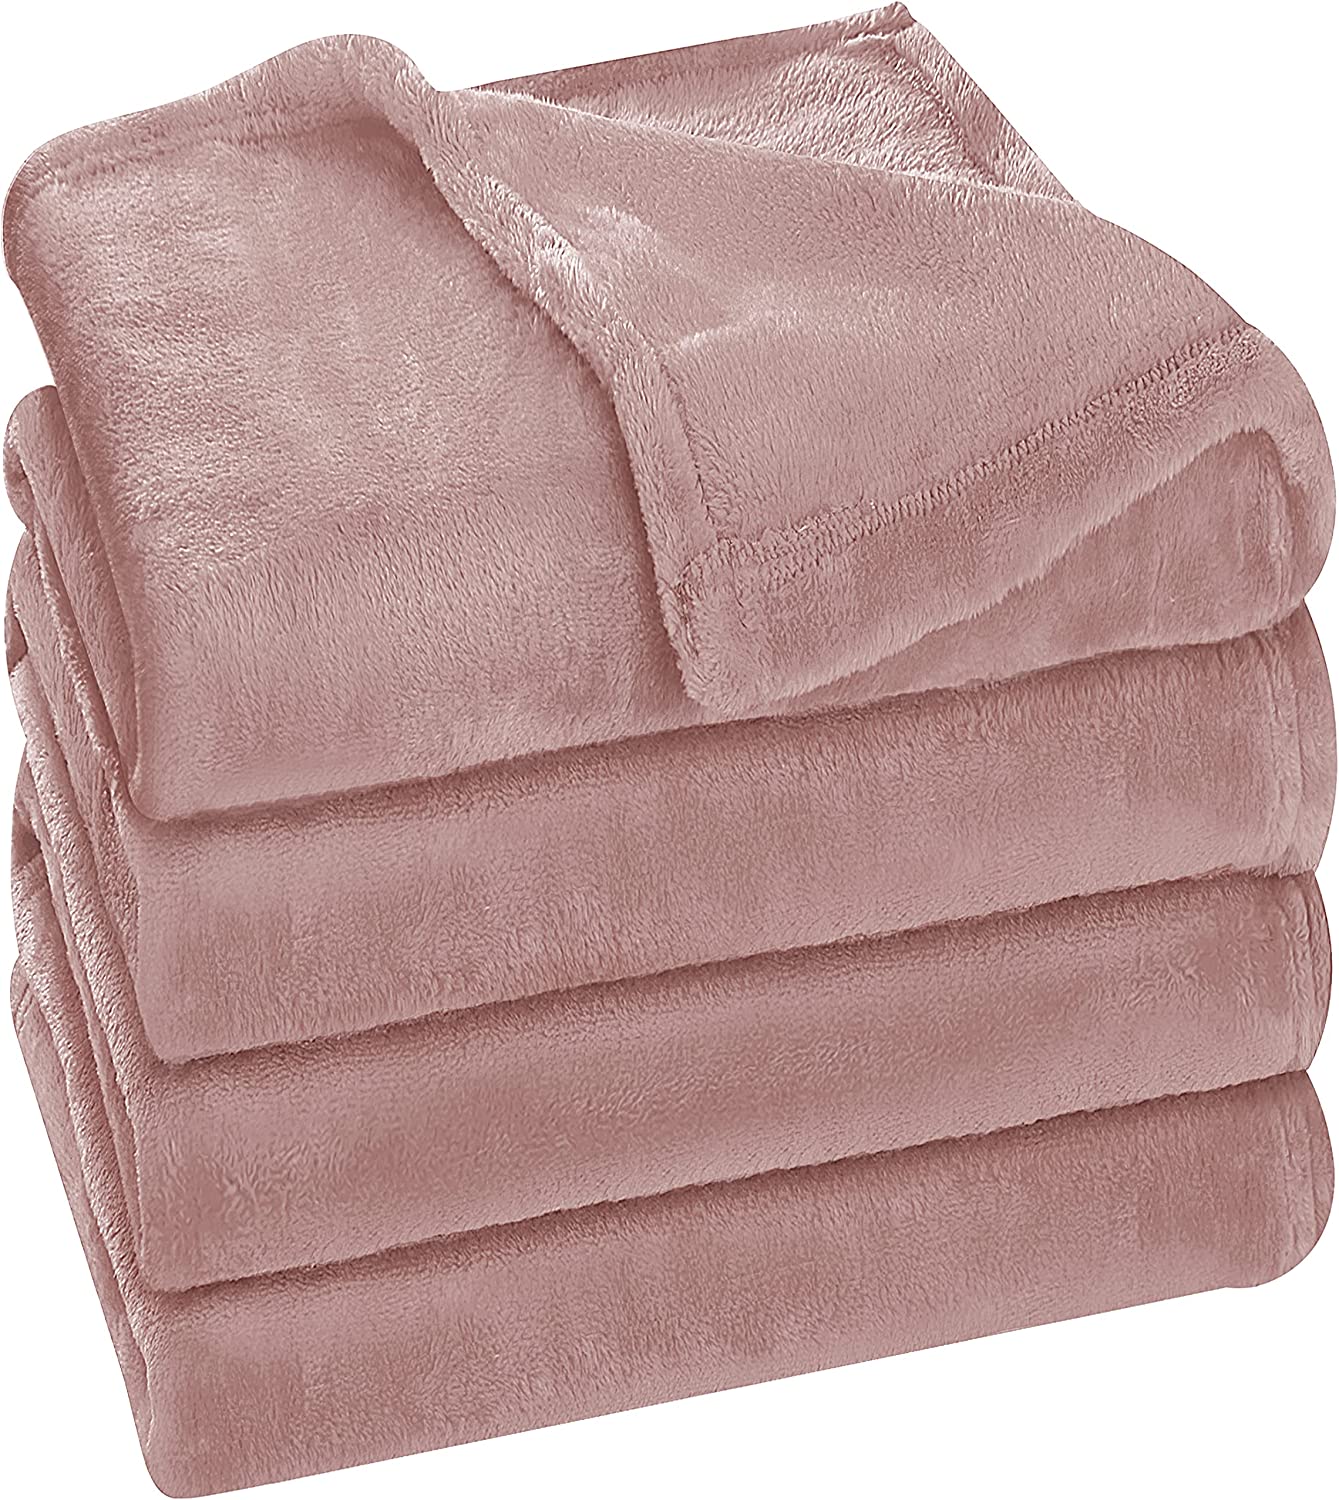 Utopia Bedding Fleece Blanket Queen Size Rose Pink 300GSM Luxury